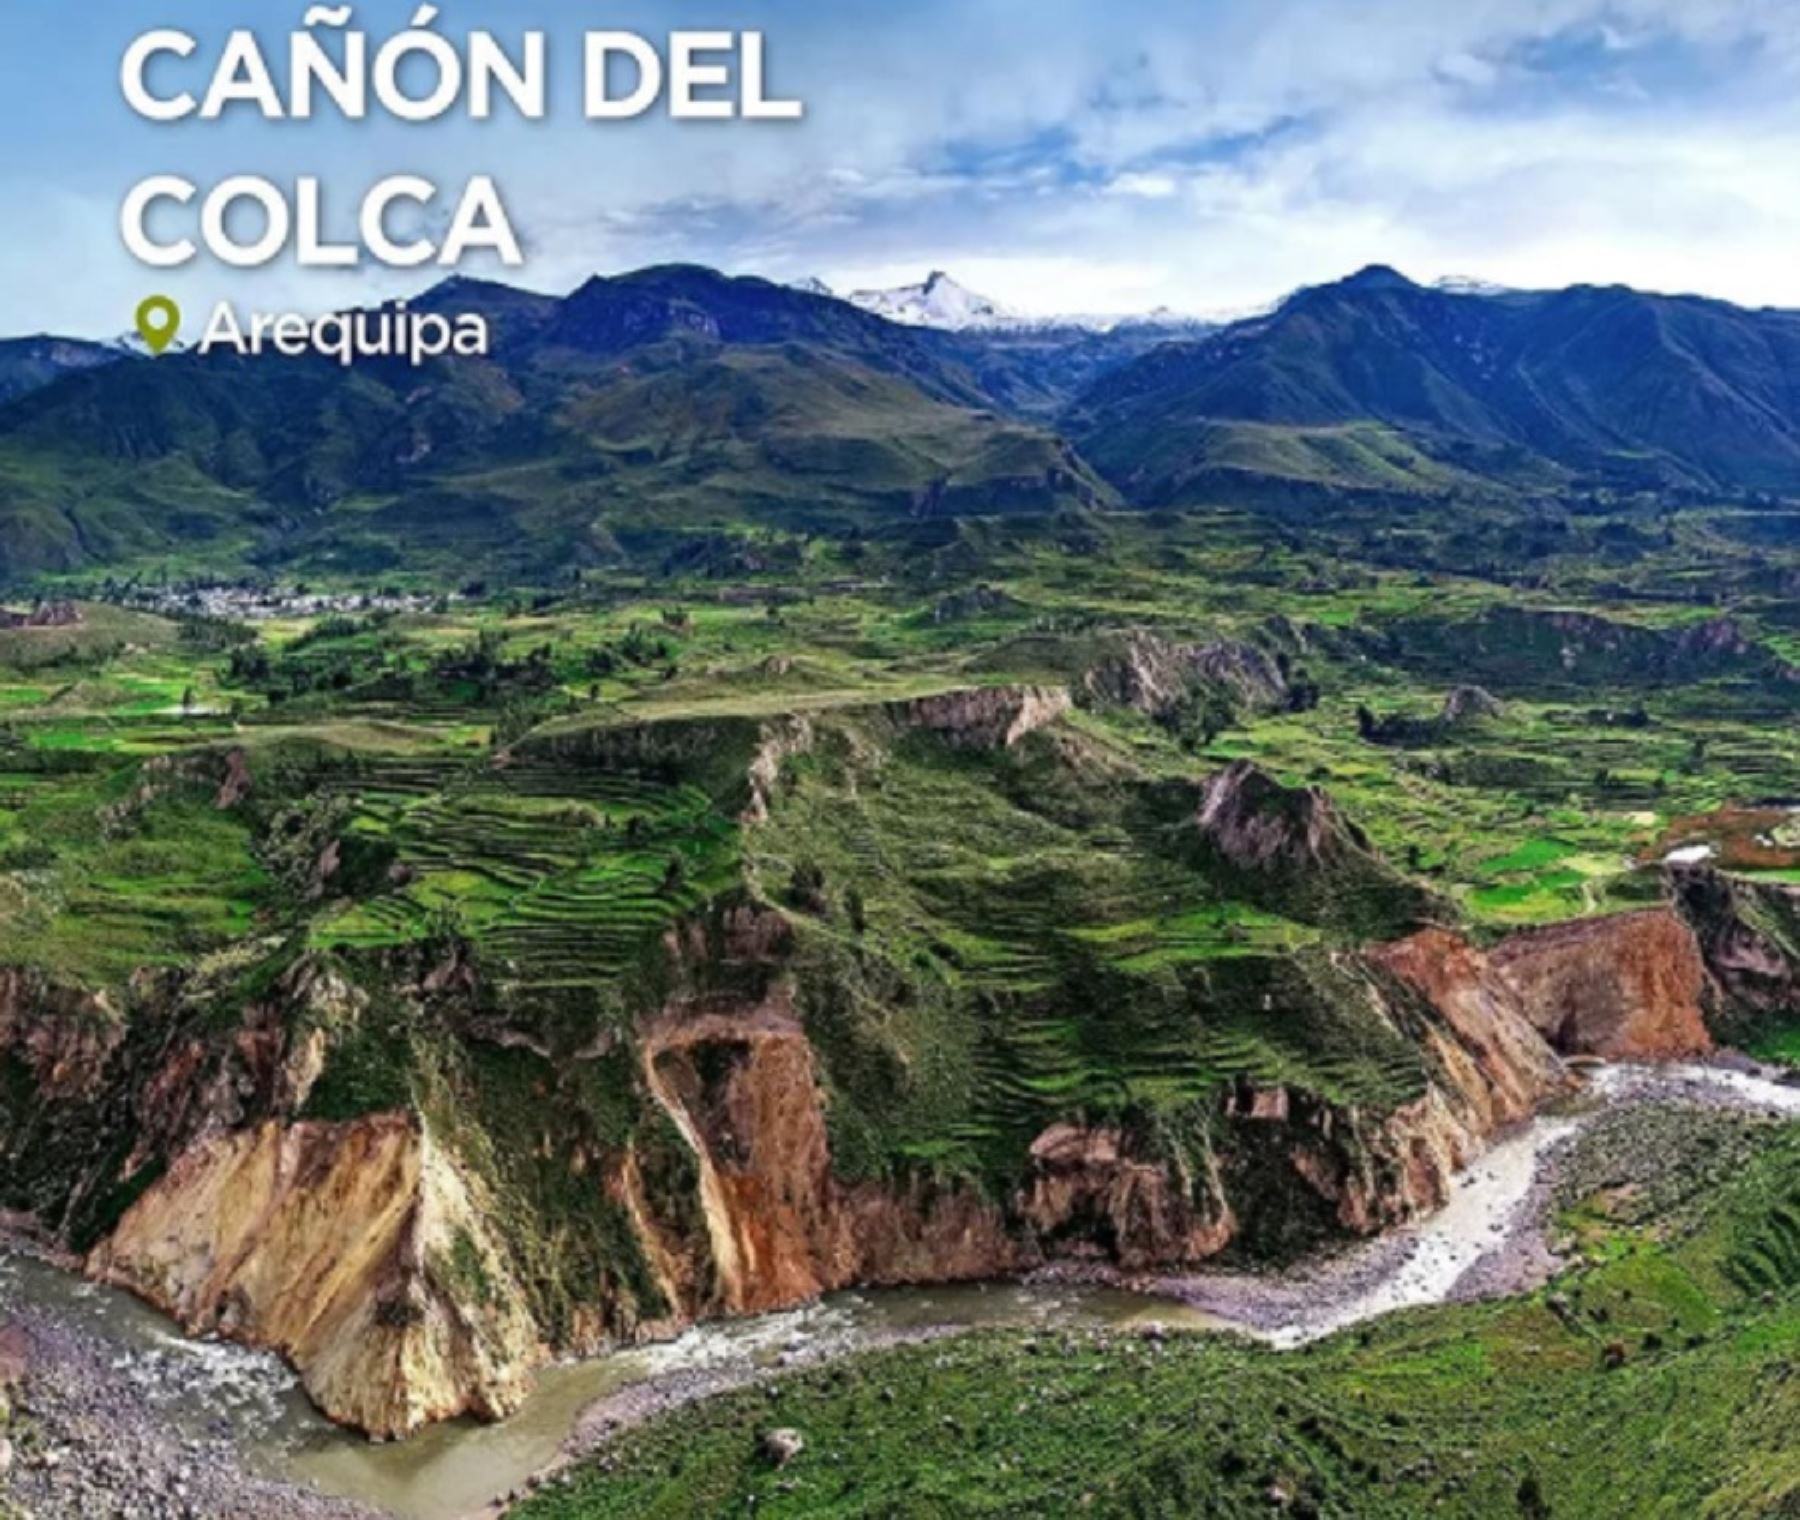 El Cañón del Colca es uno de los principales atractivos turísticos de la región Arequipa que se pueden visitar en el feriado largo por Semana Santa. ANDINA/Difusión